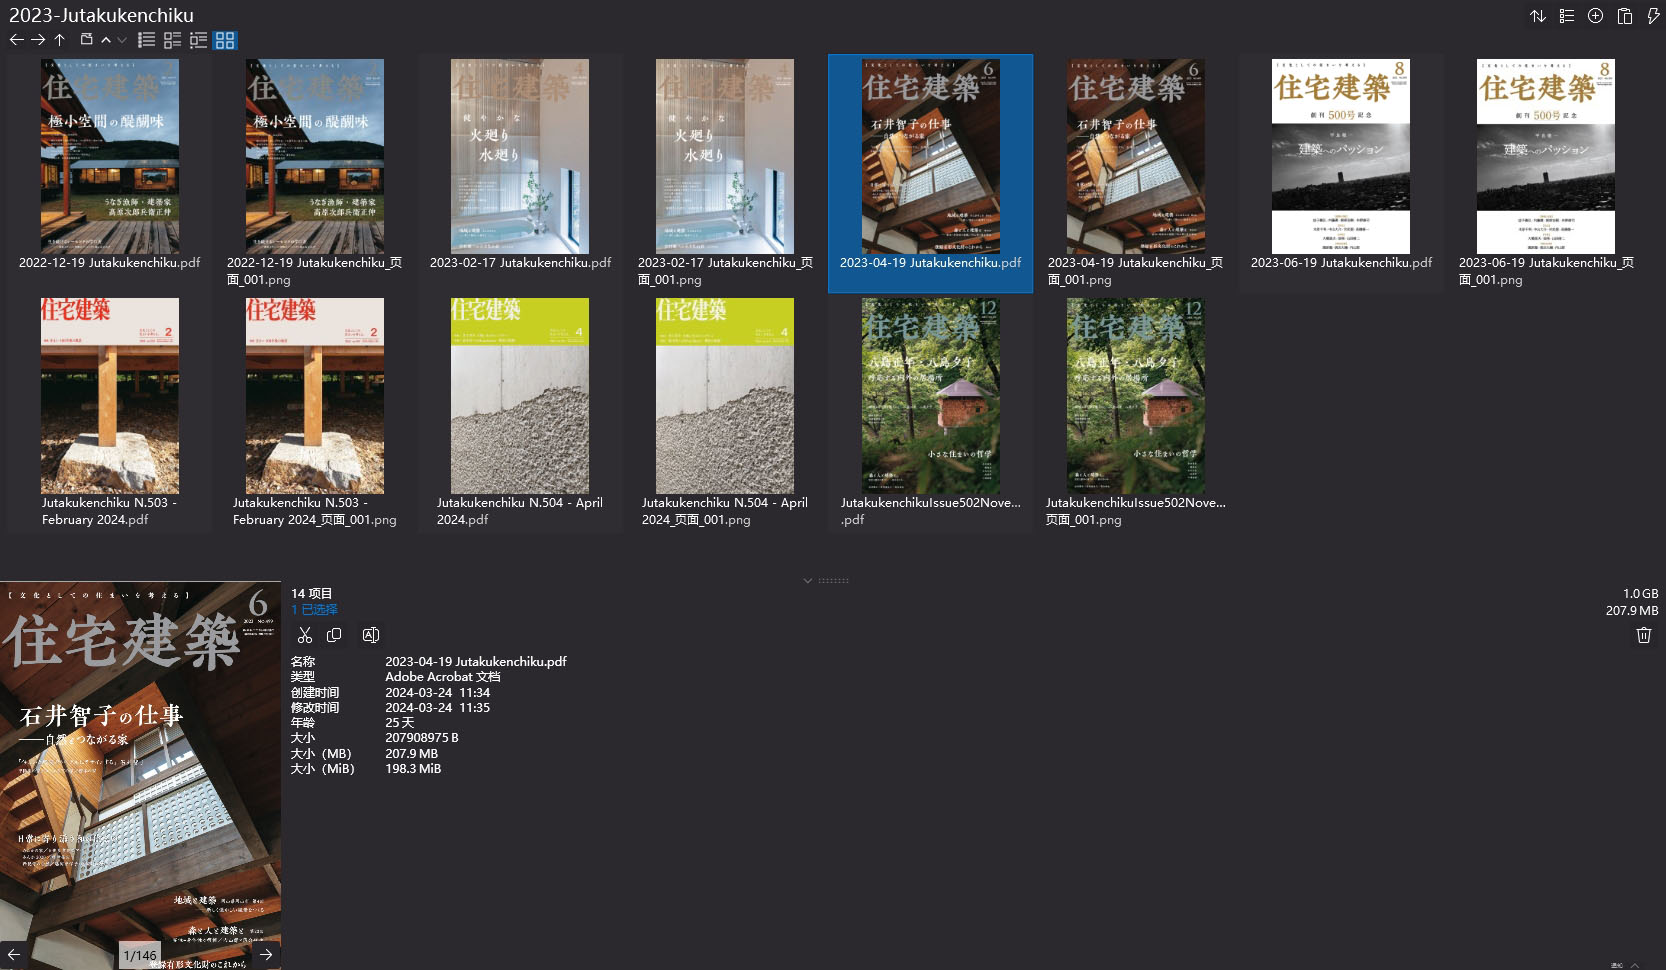 住宅建築設計雜誌,Jutakukenchiku設計雜誌,日本住宅建築雜誌,日本設計雜誌,雜誌下載,Jutakukenchiku雜誌合集